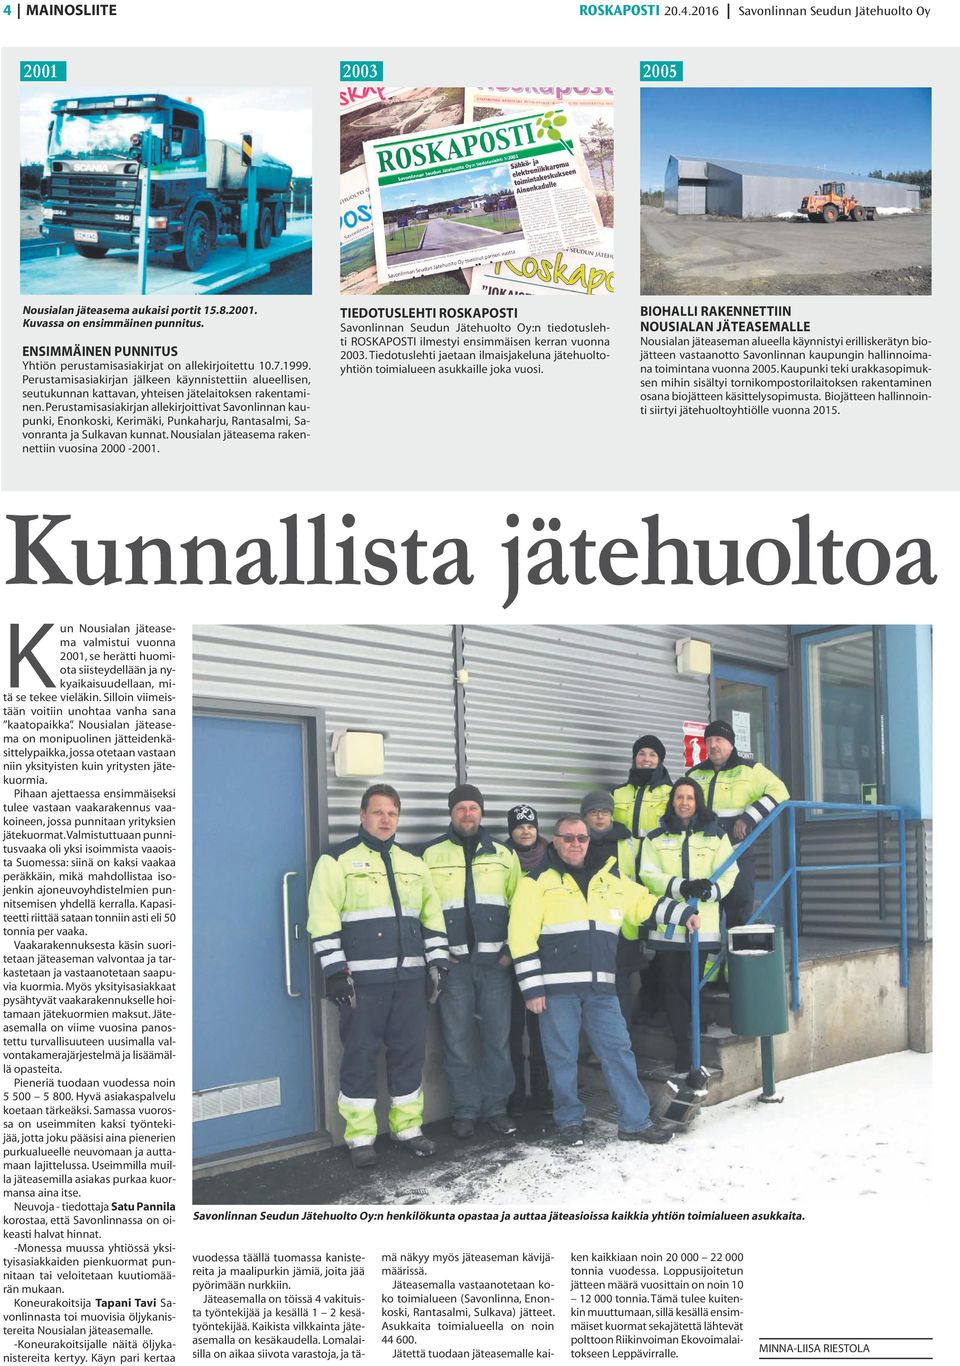 Perustamisasiakirjan allekirjoittivat Savonlinnan kaupunki, Enonkoski, Kerimäki, Punkaharju, Rantasalmi, Savonranta ja Sulkavan kunnat. Nousialan jäteasema rakennettiin vuosina 2000-2001.